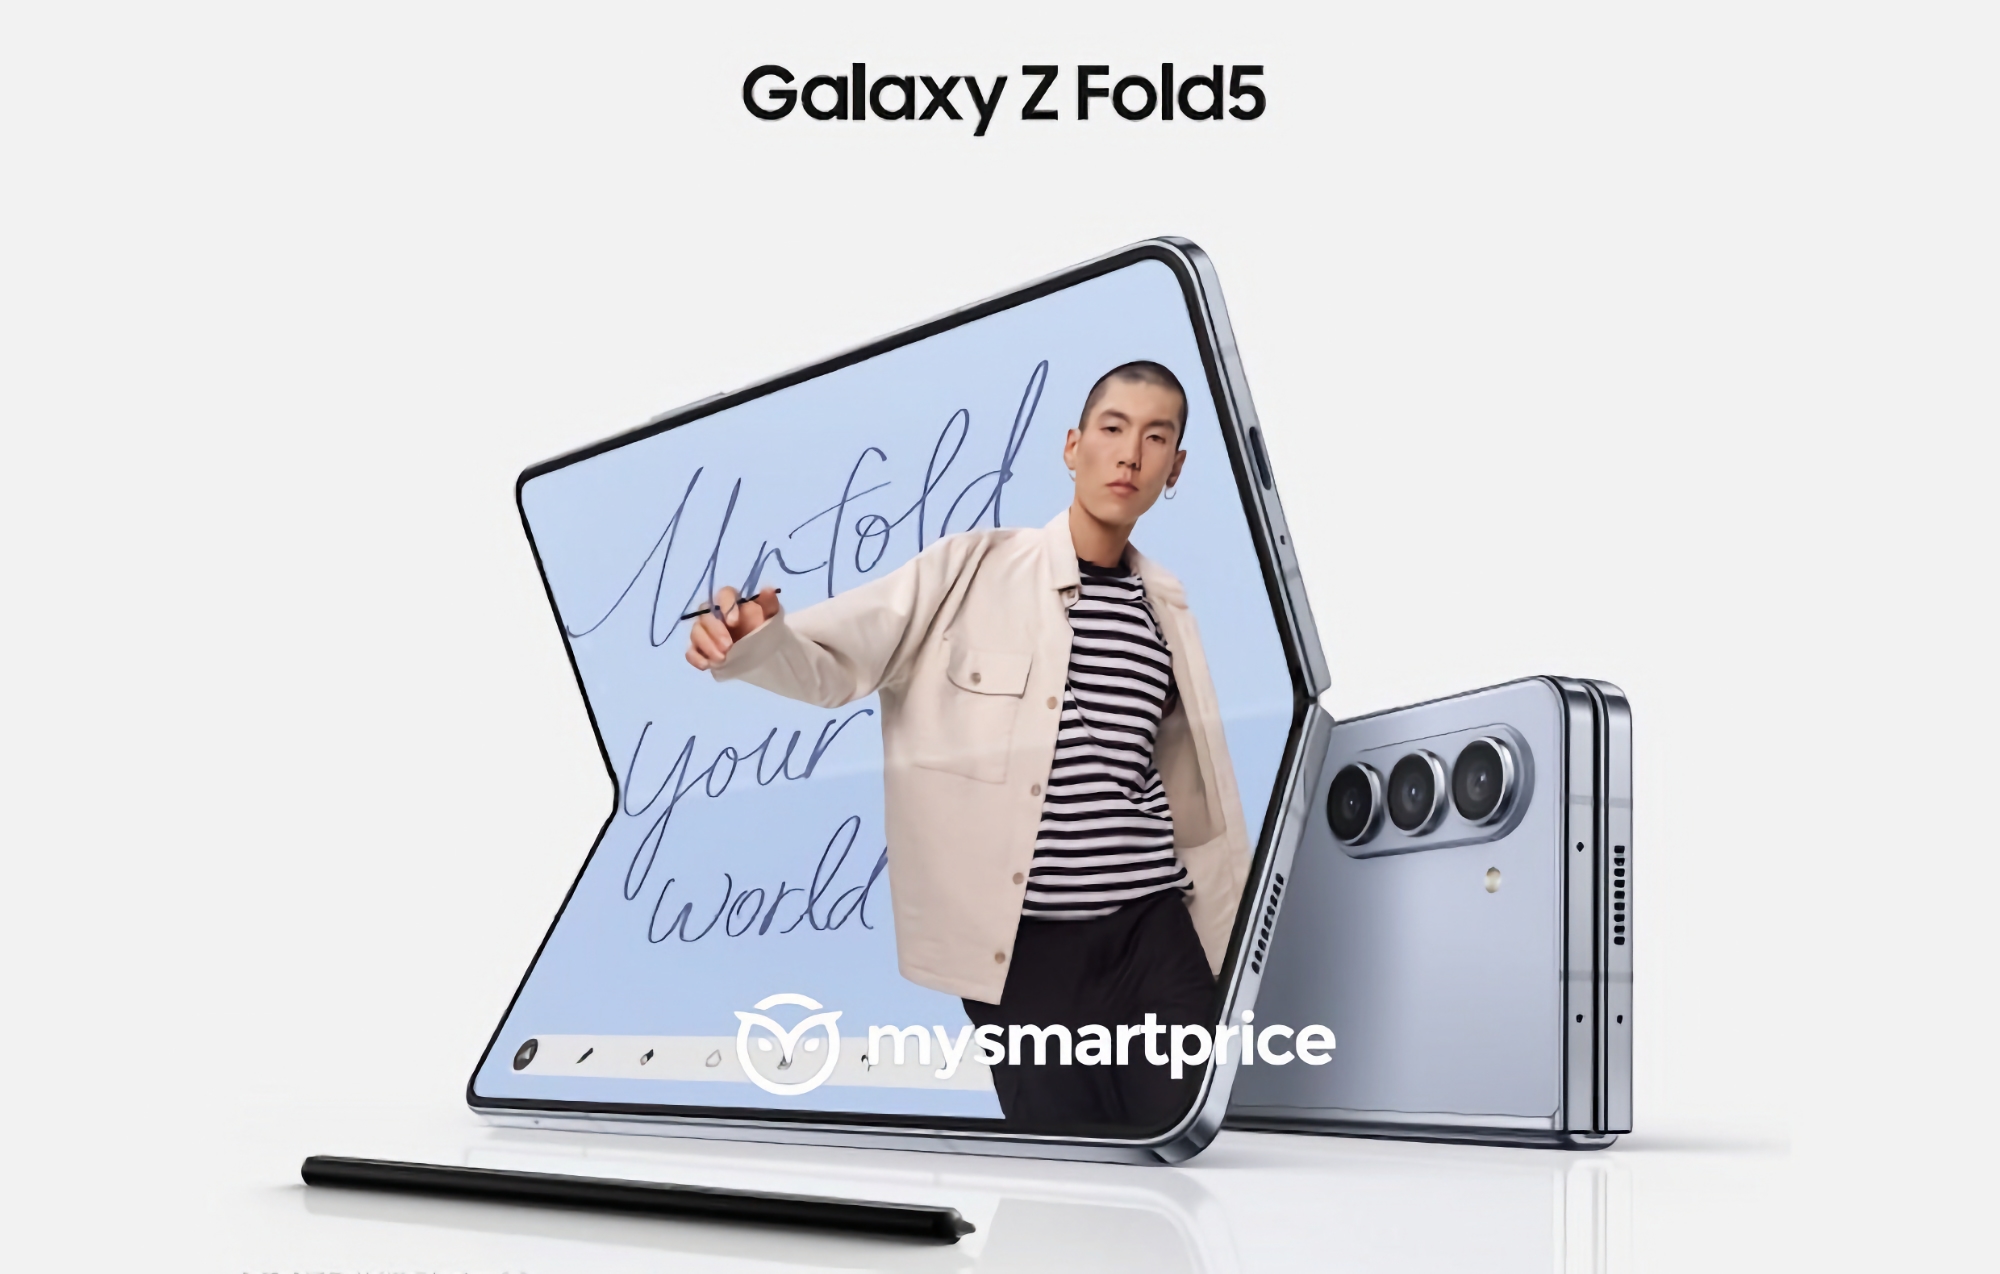 Minimalne zmiany: pierwsze oficjalne zdjęcie smartfona Samsung Galaxy Fold 5 pojawiło się w sieci